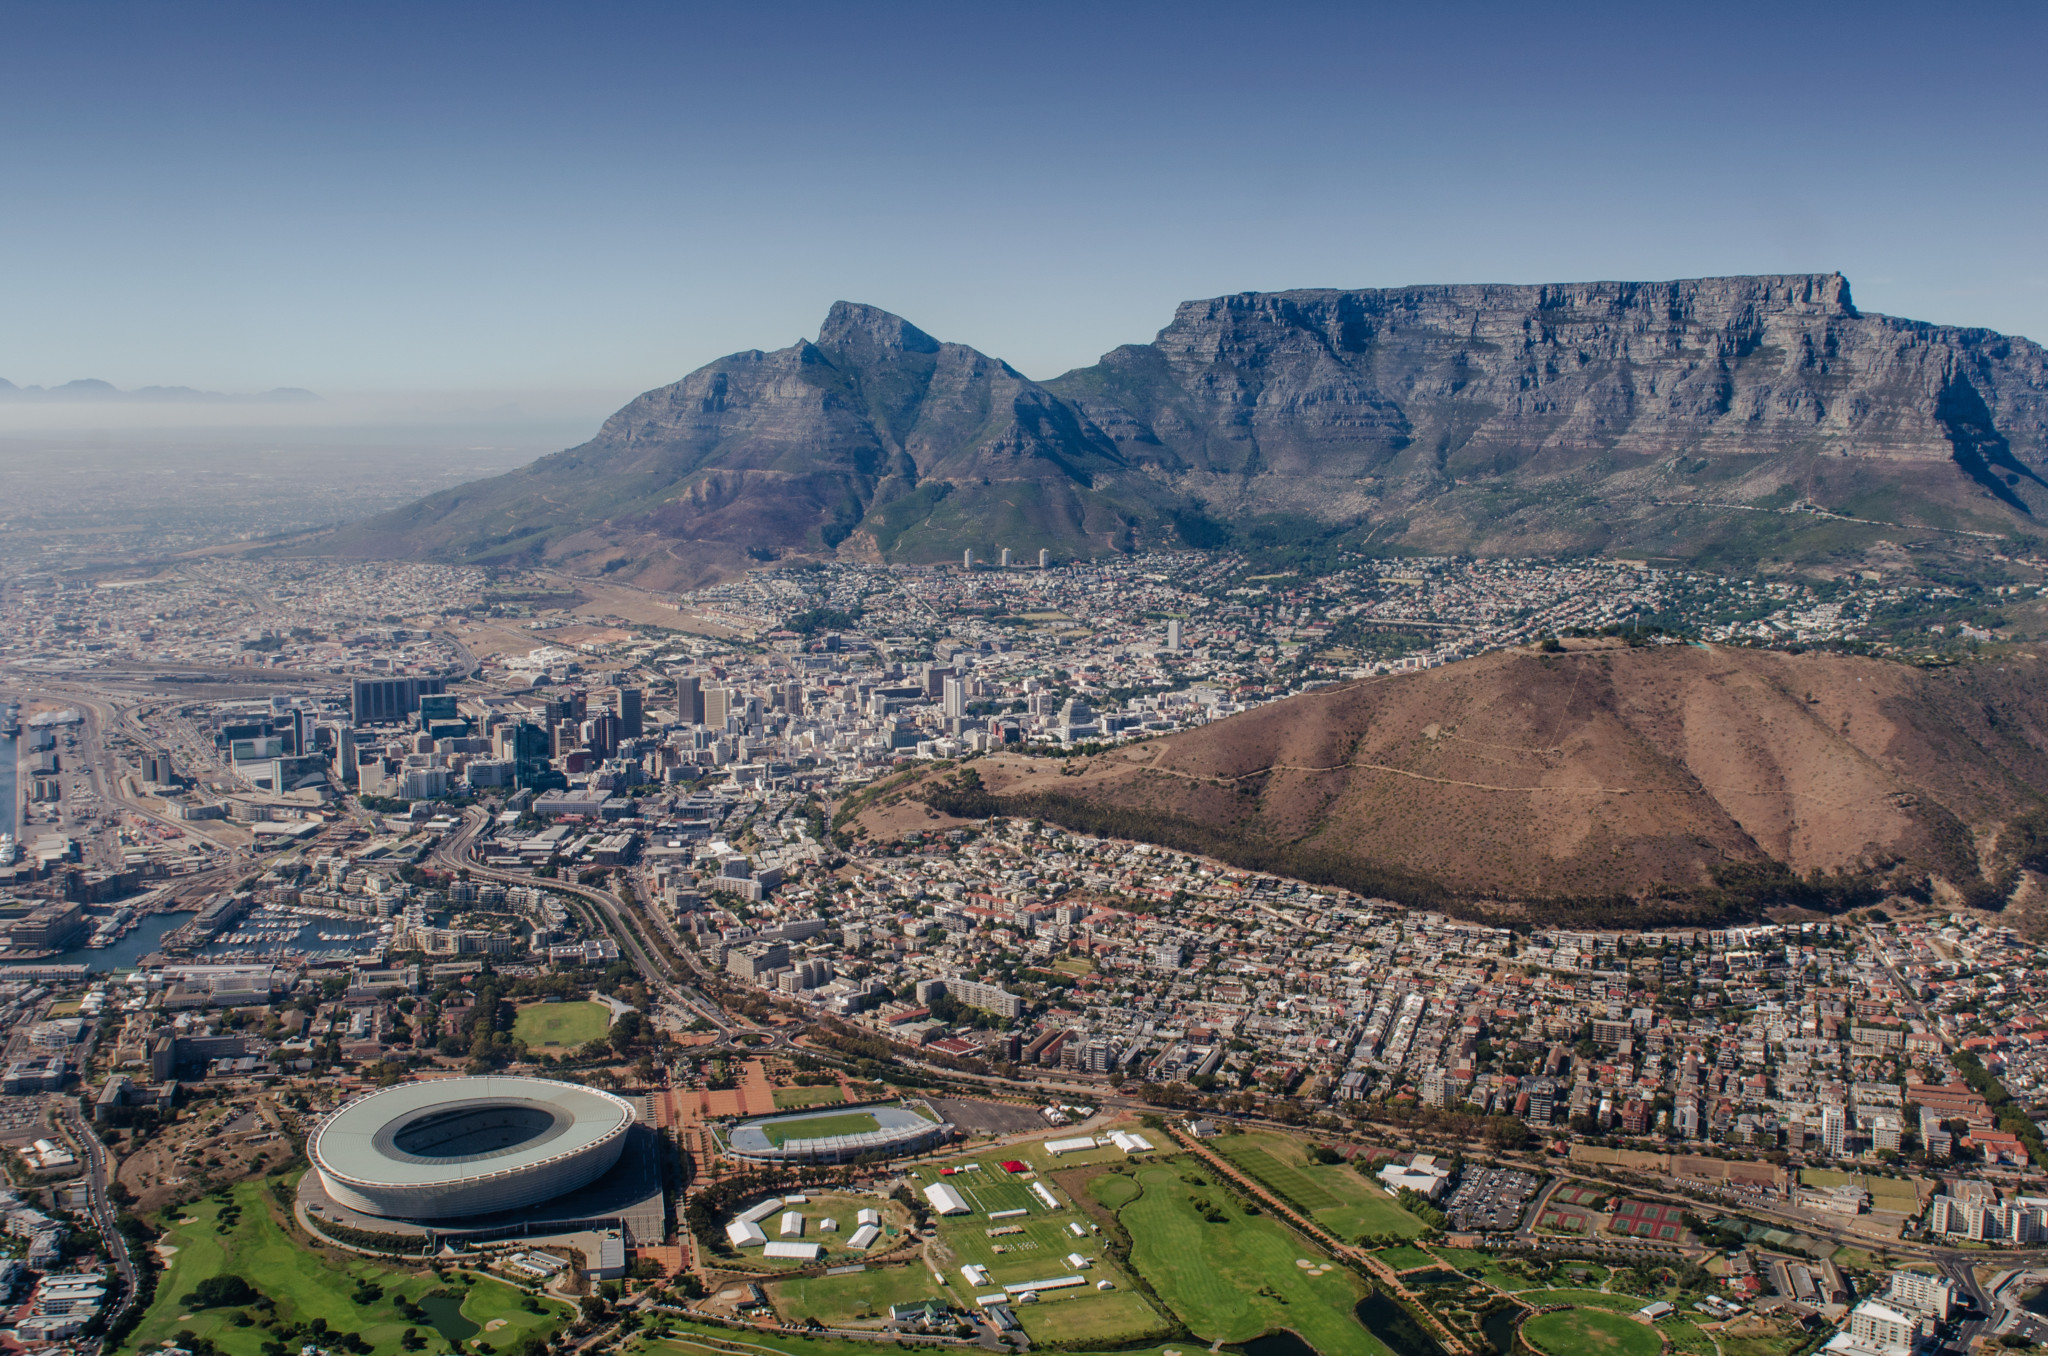 Ausblick vom Tafelberg auf Kapstadt